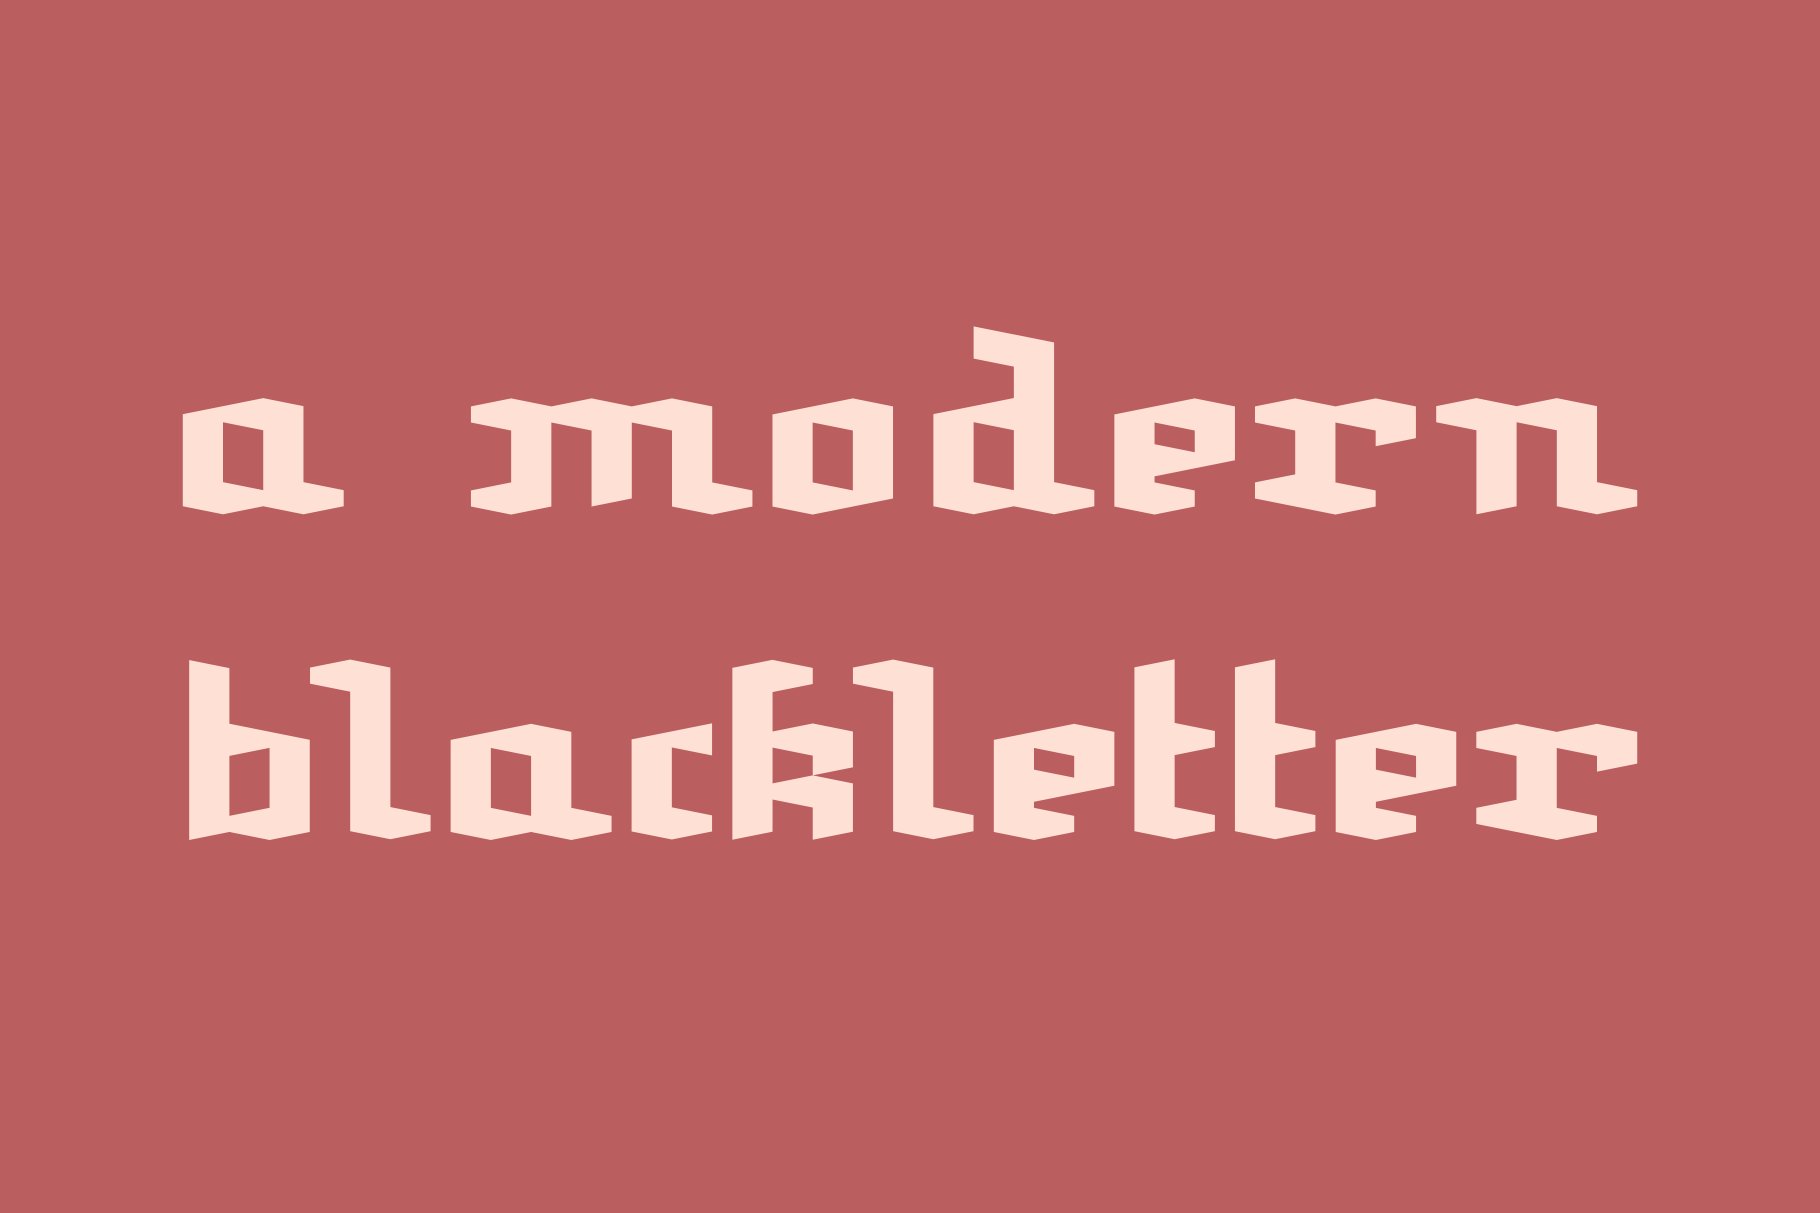 blackletter font calligraphy alphabet typeface modern gothic download jason burkholder designer design solvang description 976